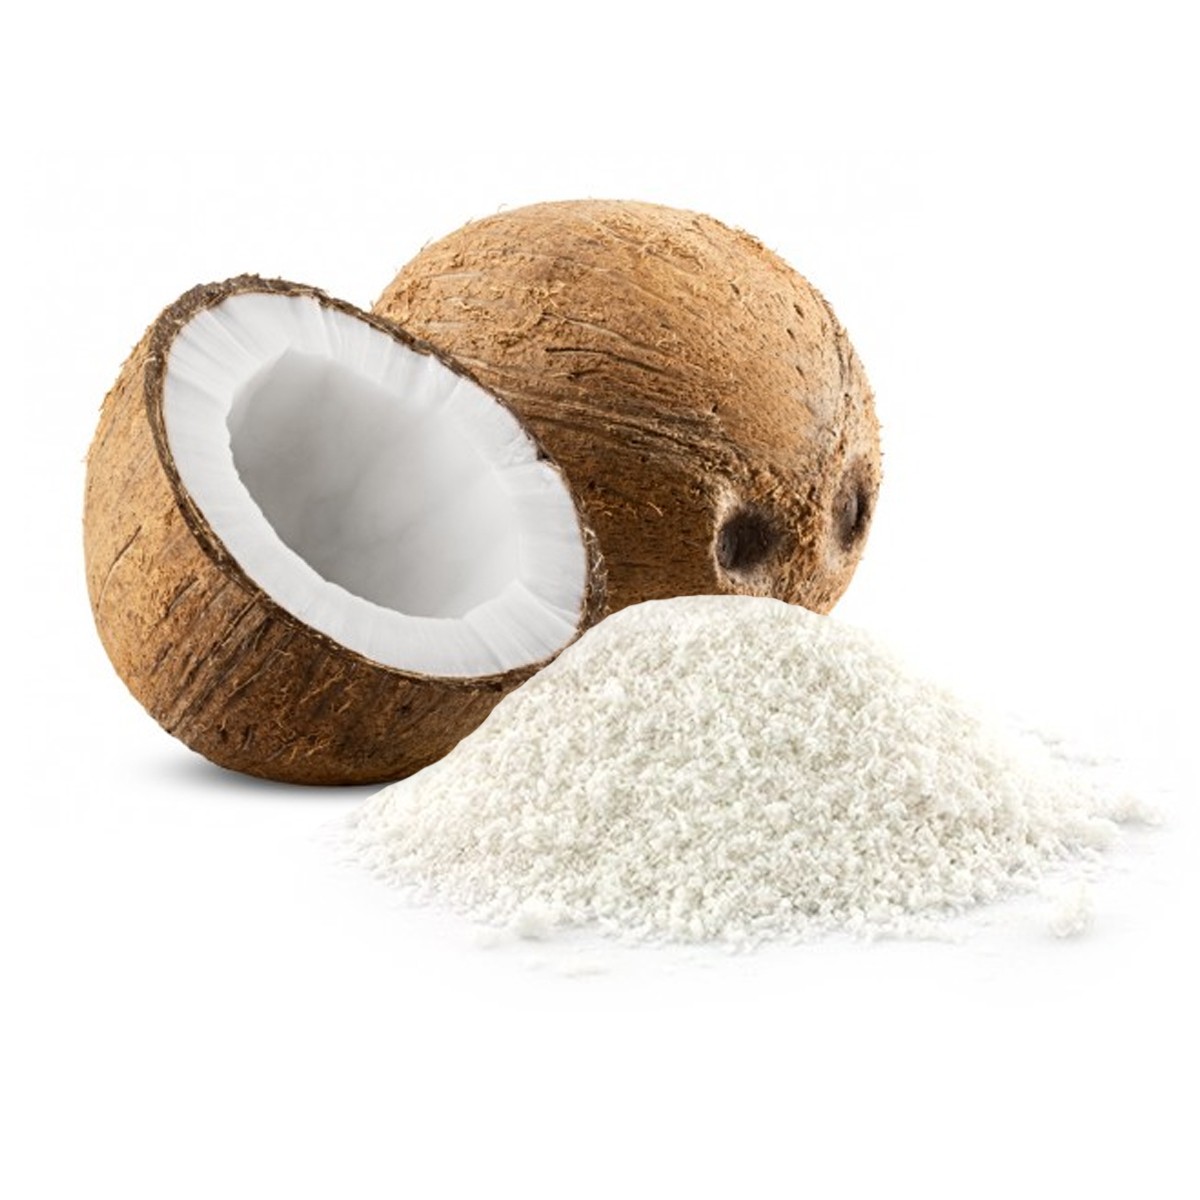 Desiccated Coconut / Noix De Coco